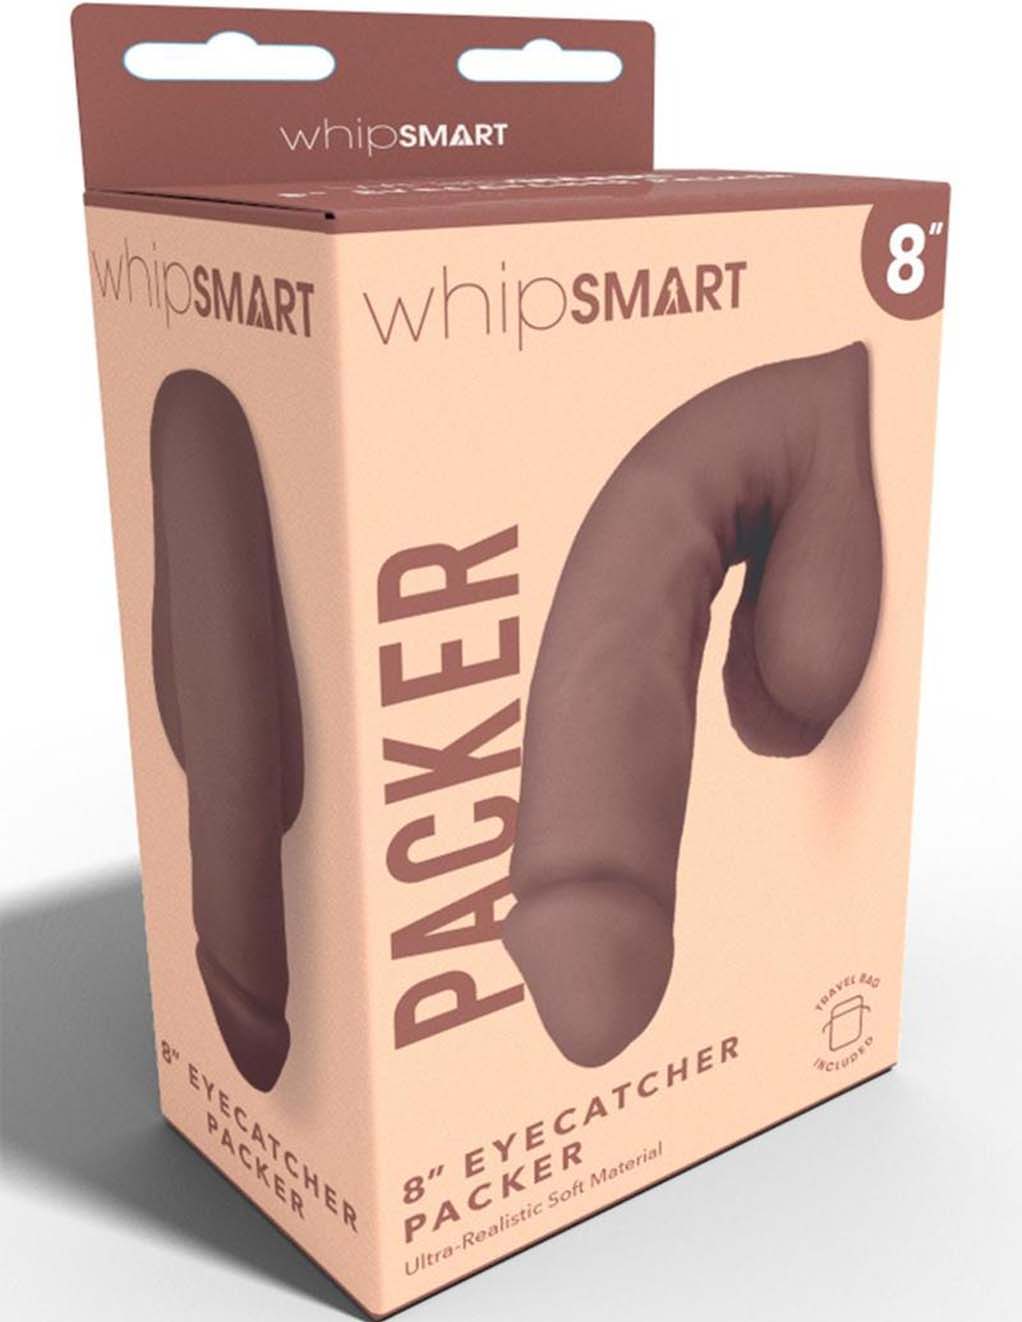 WhipSmart 8" Eyecatching Packer- Chocolate- Box